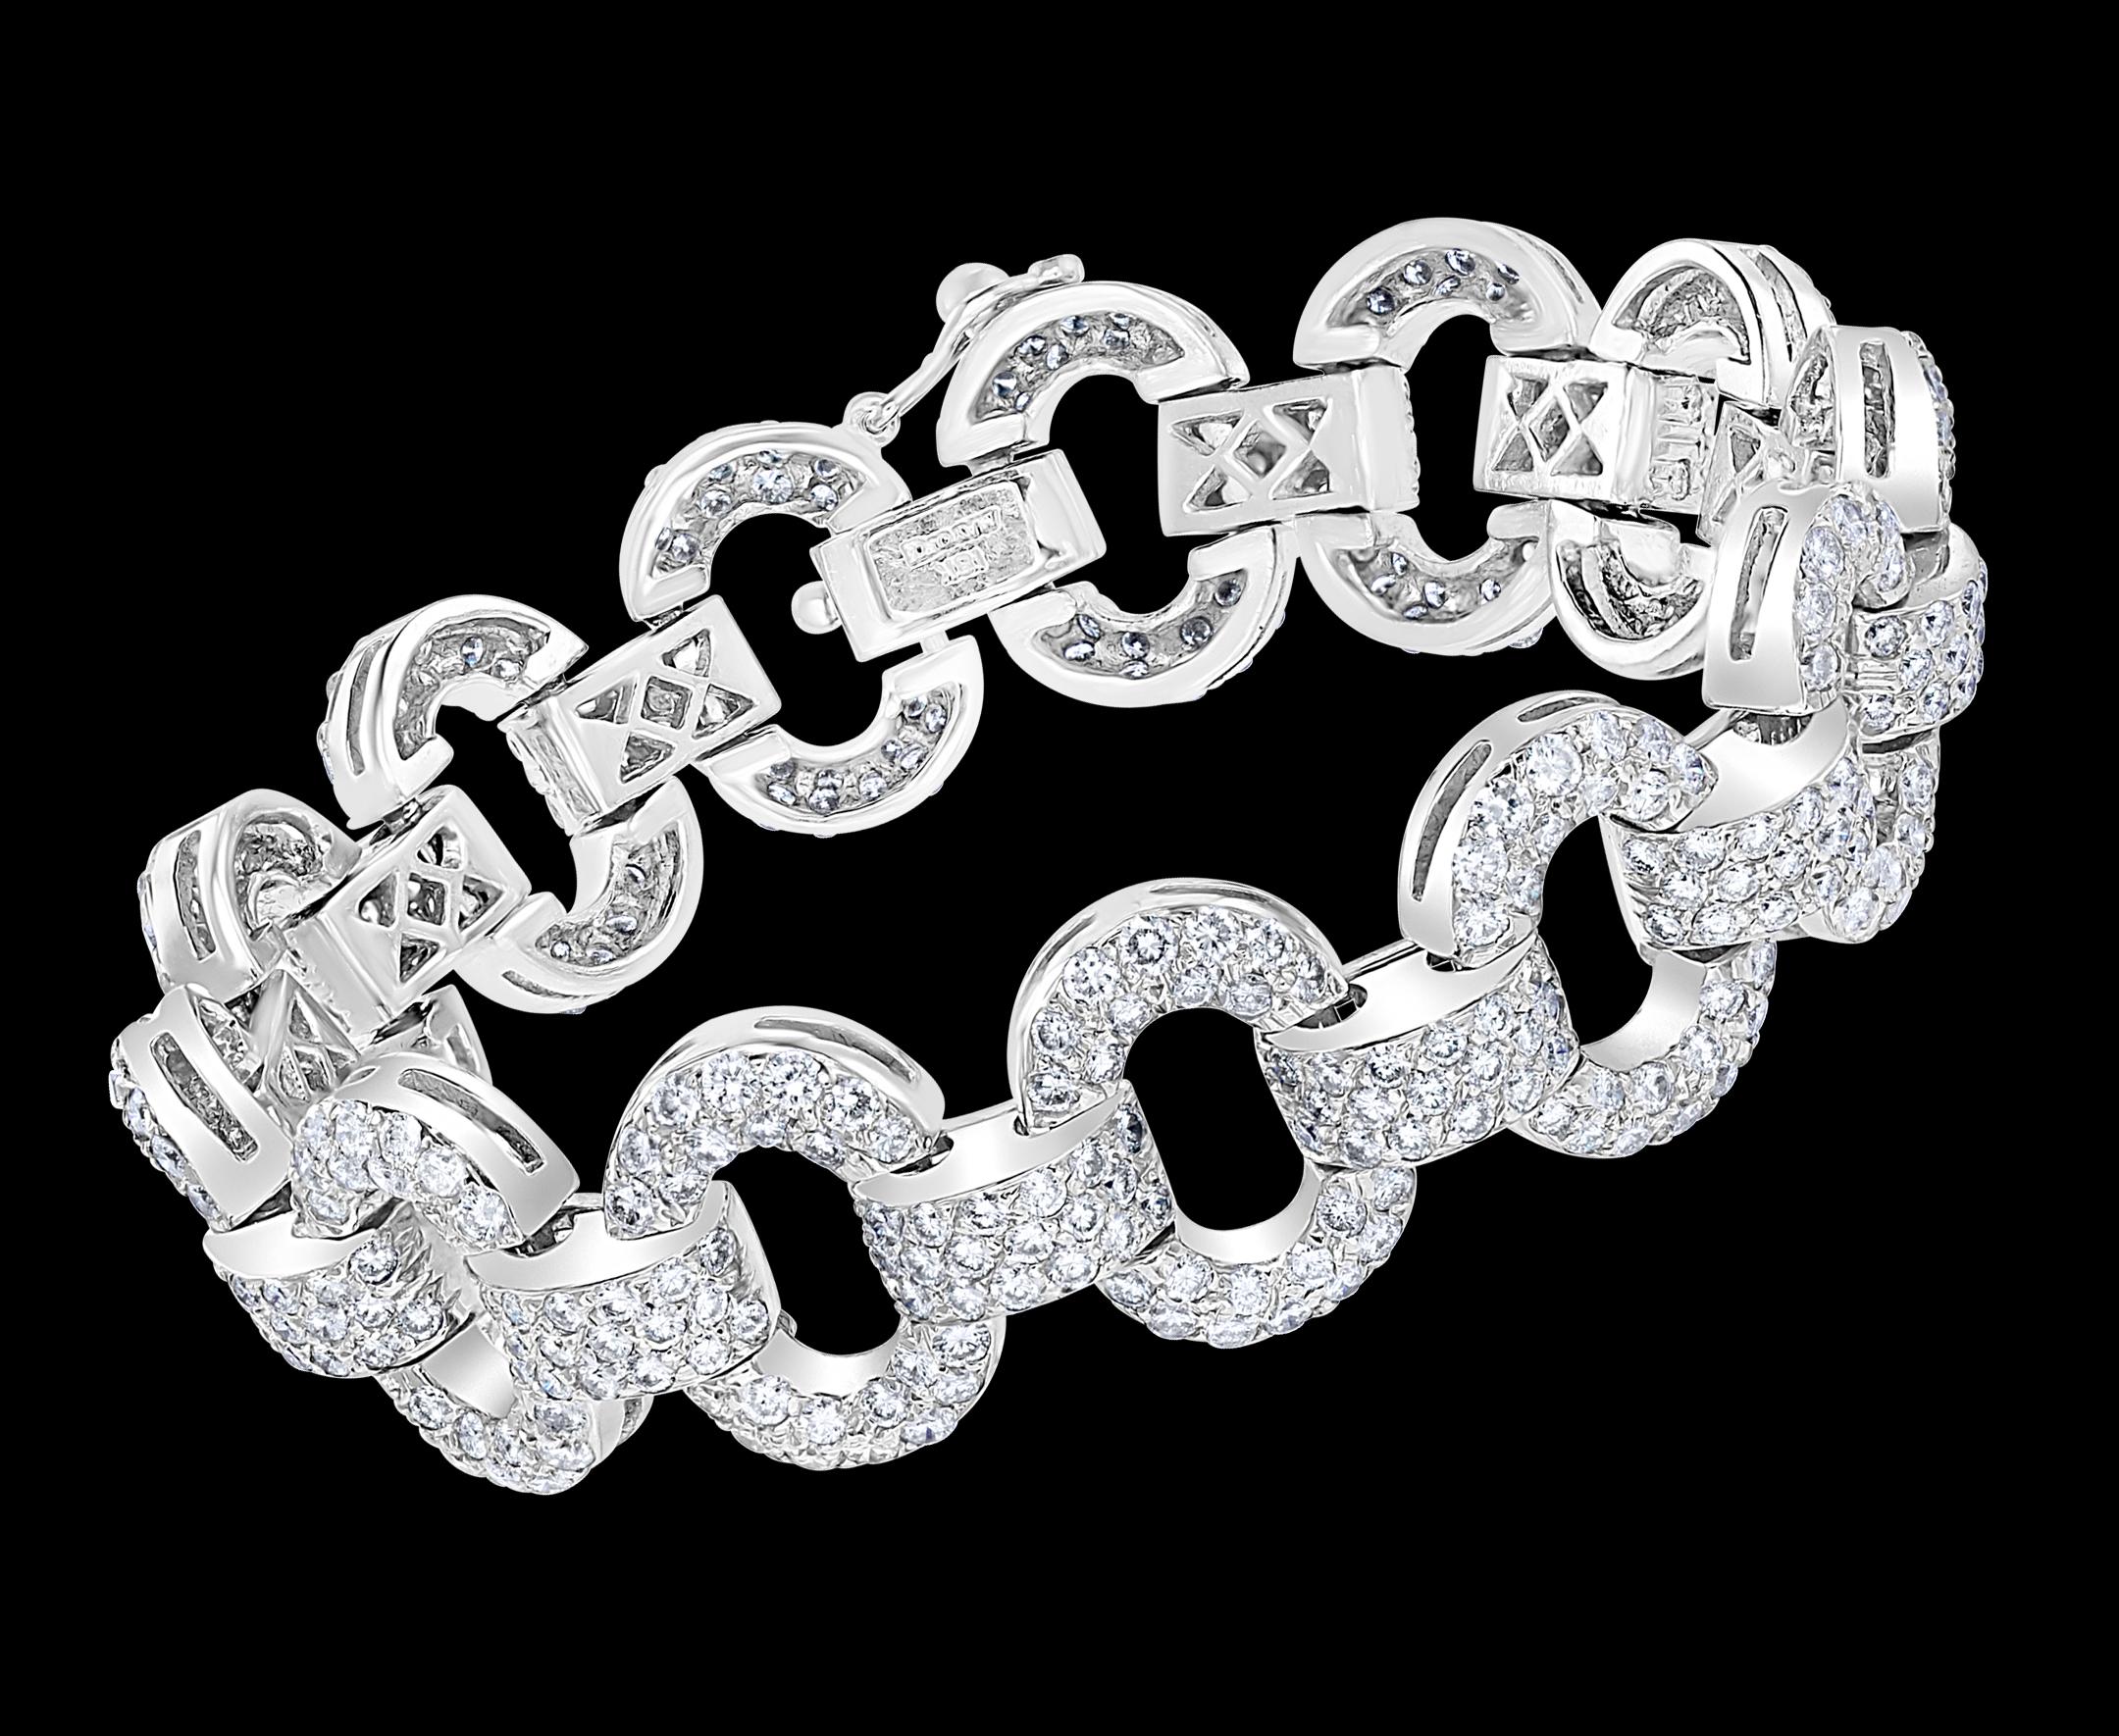 Round Cut 15 Carat Diamond Bracelet in 18 Karat White Gold, 63 Grams, Estate